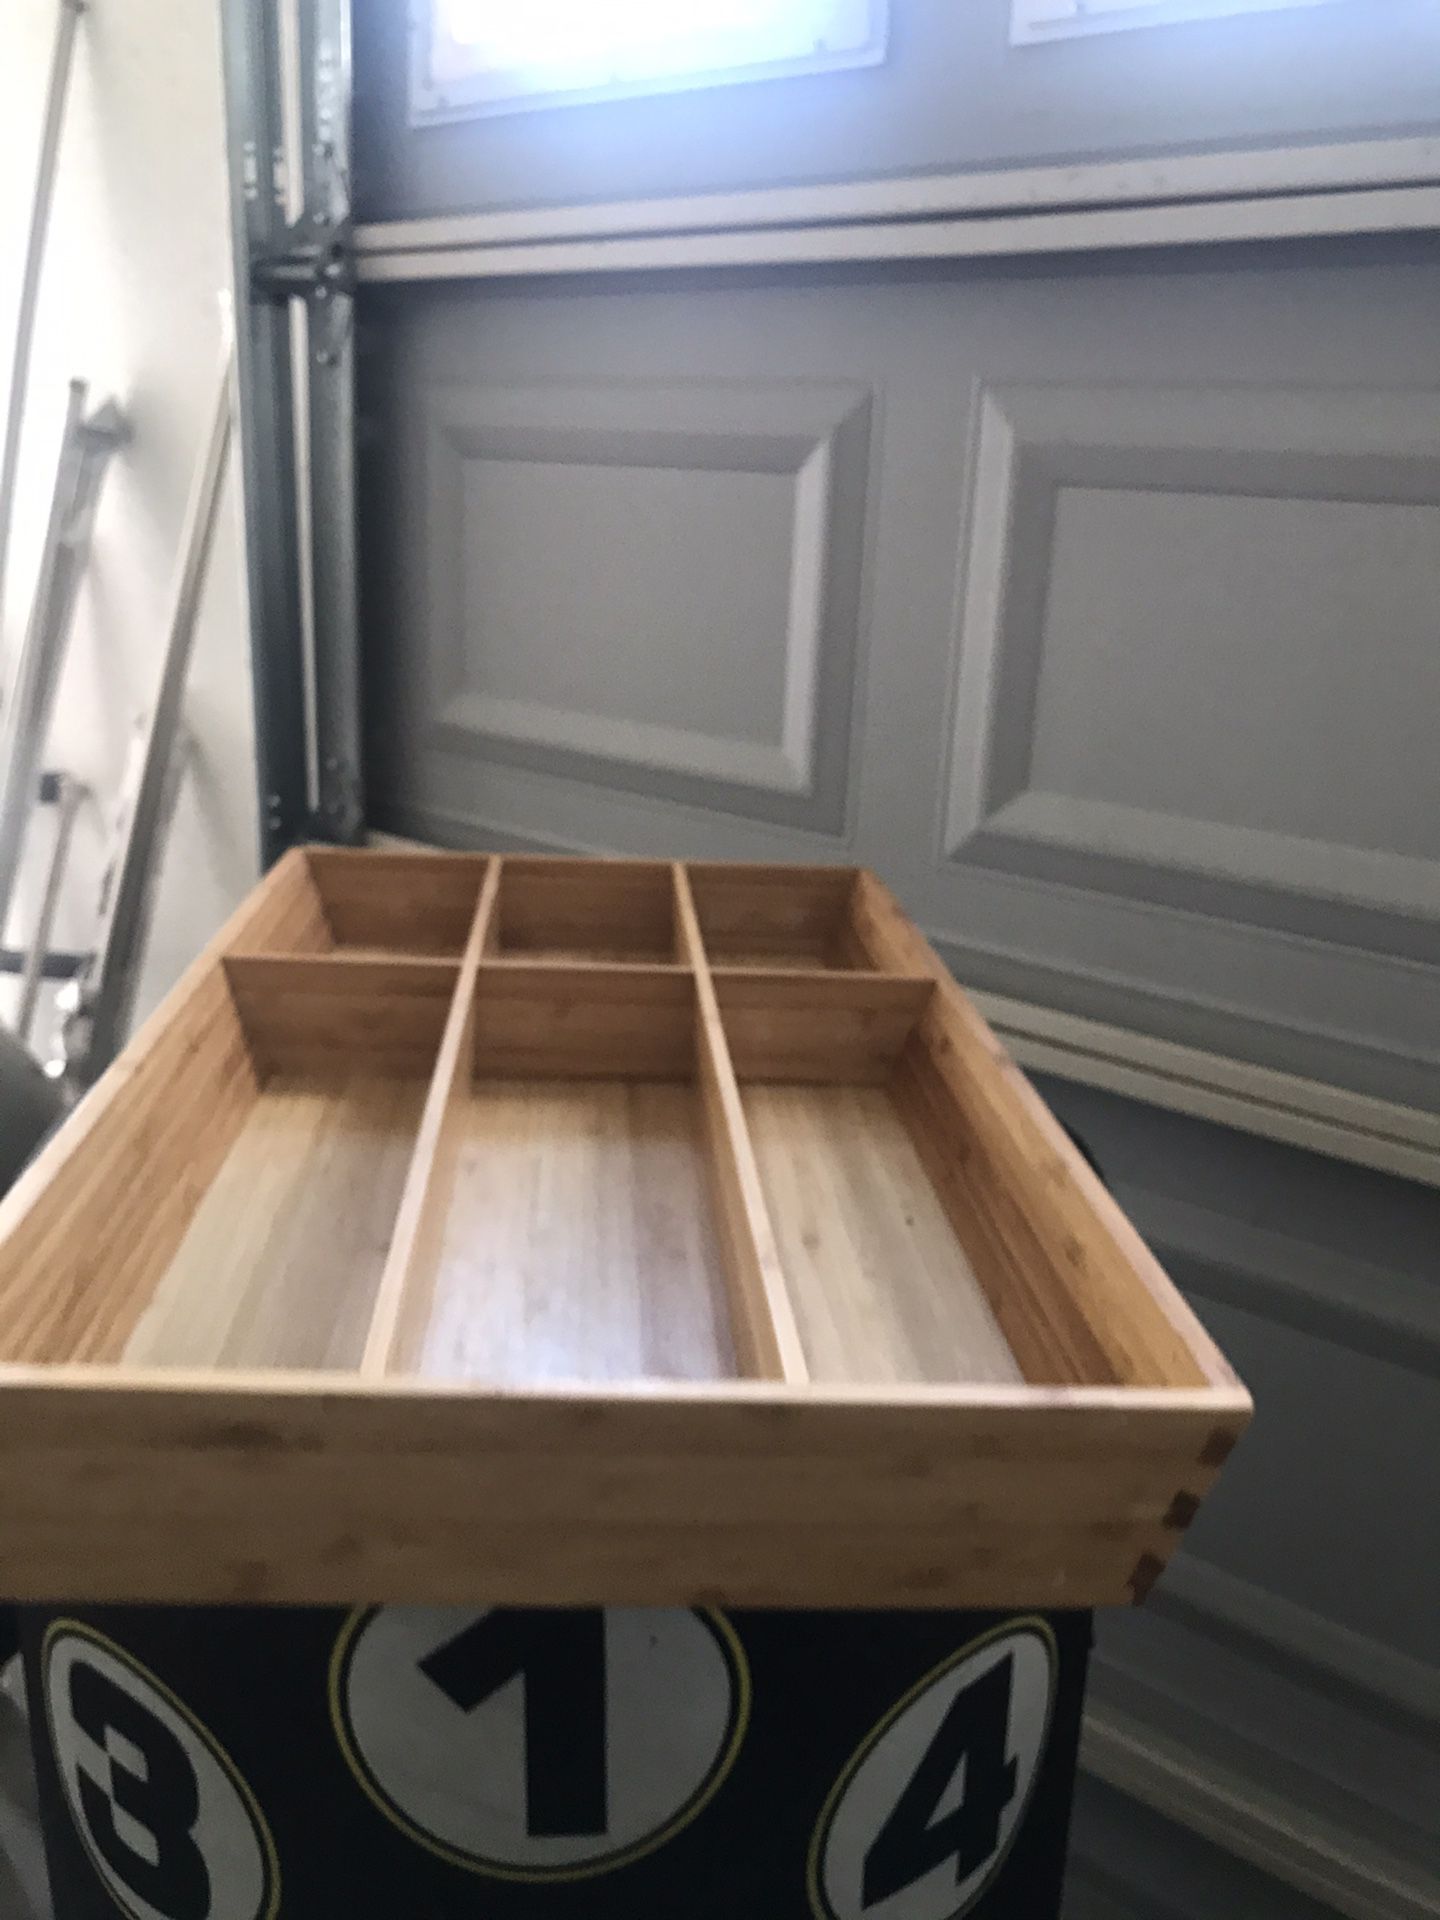 Wood kitchen drawer organizer